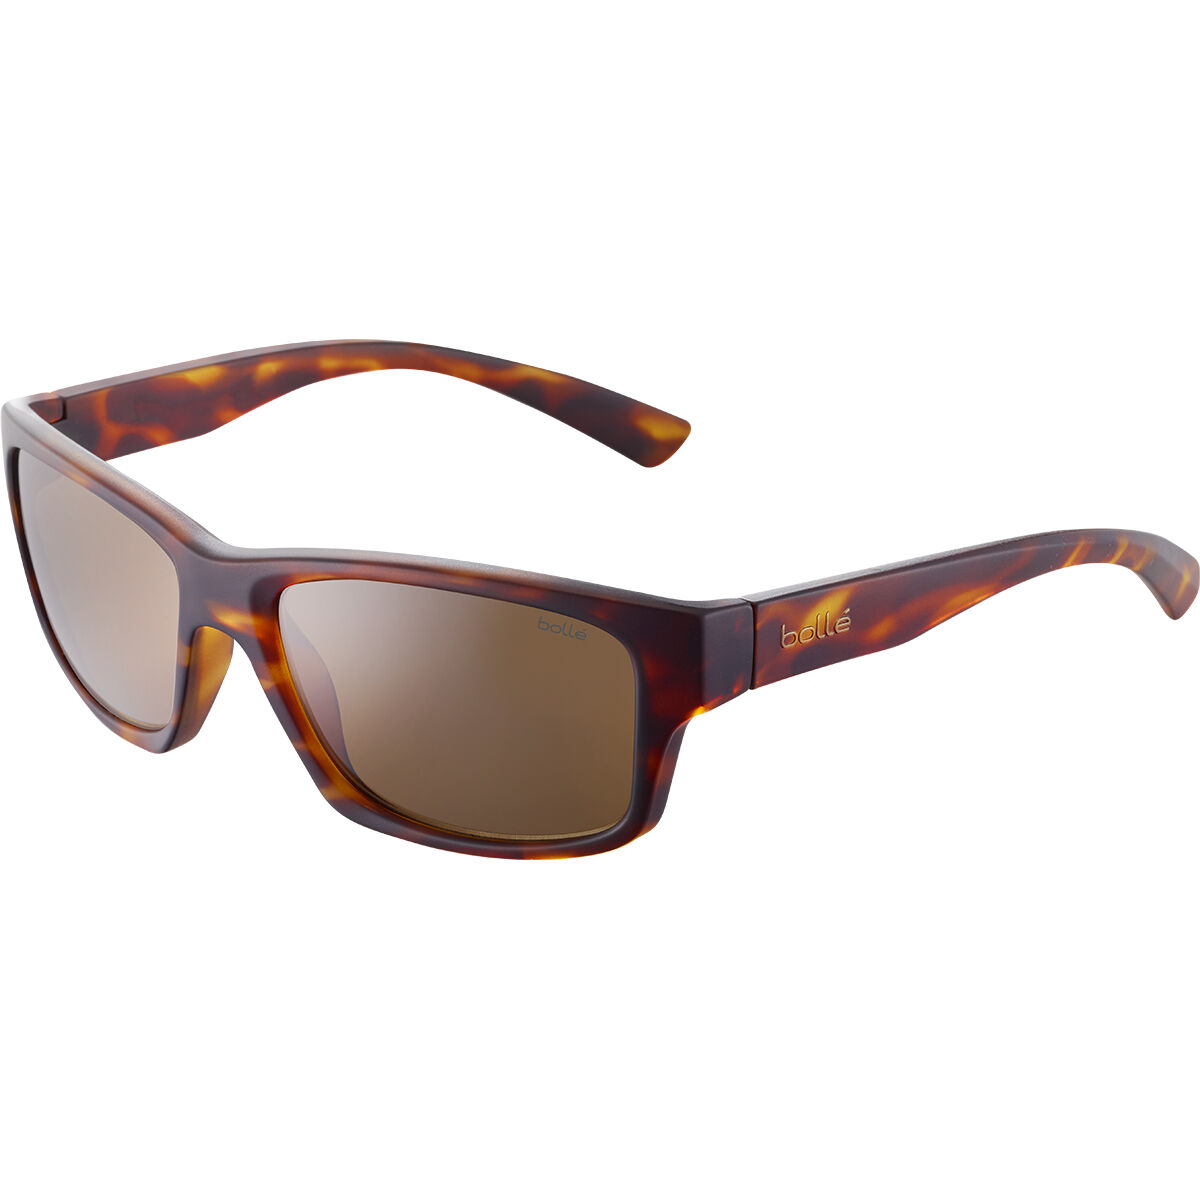 Bolle Lightweight Sunglasses for Men | Mercari